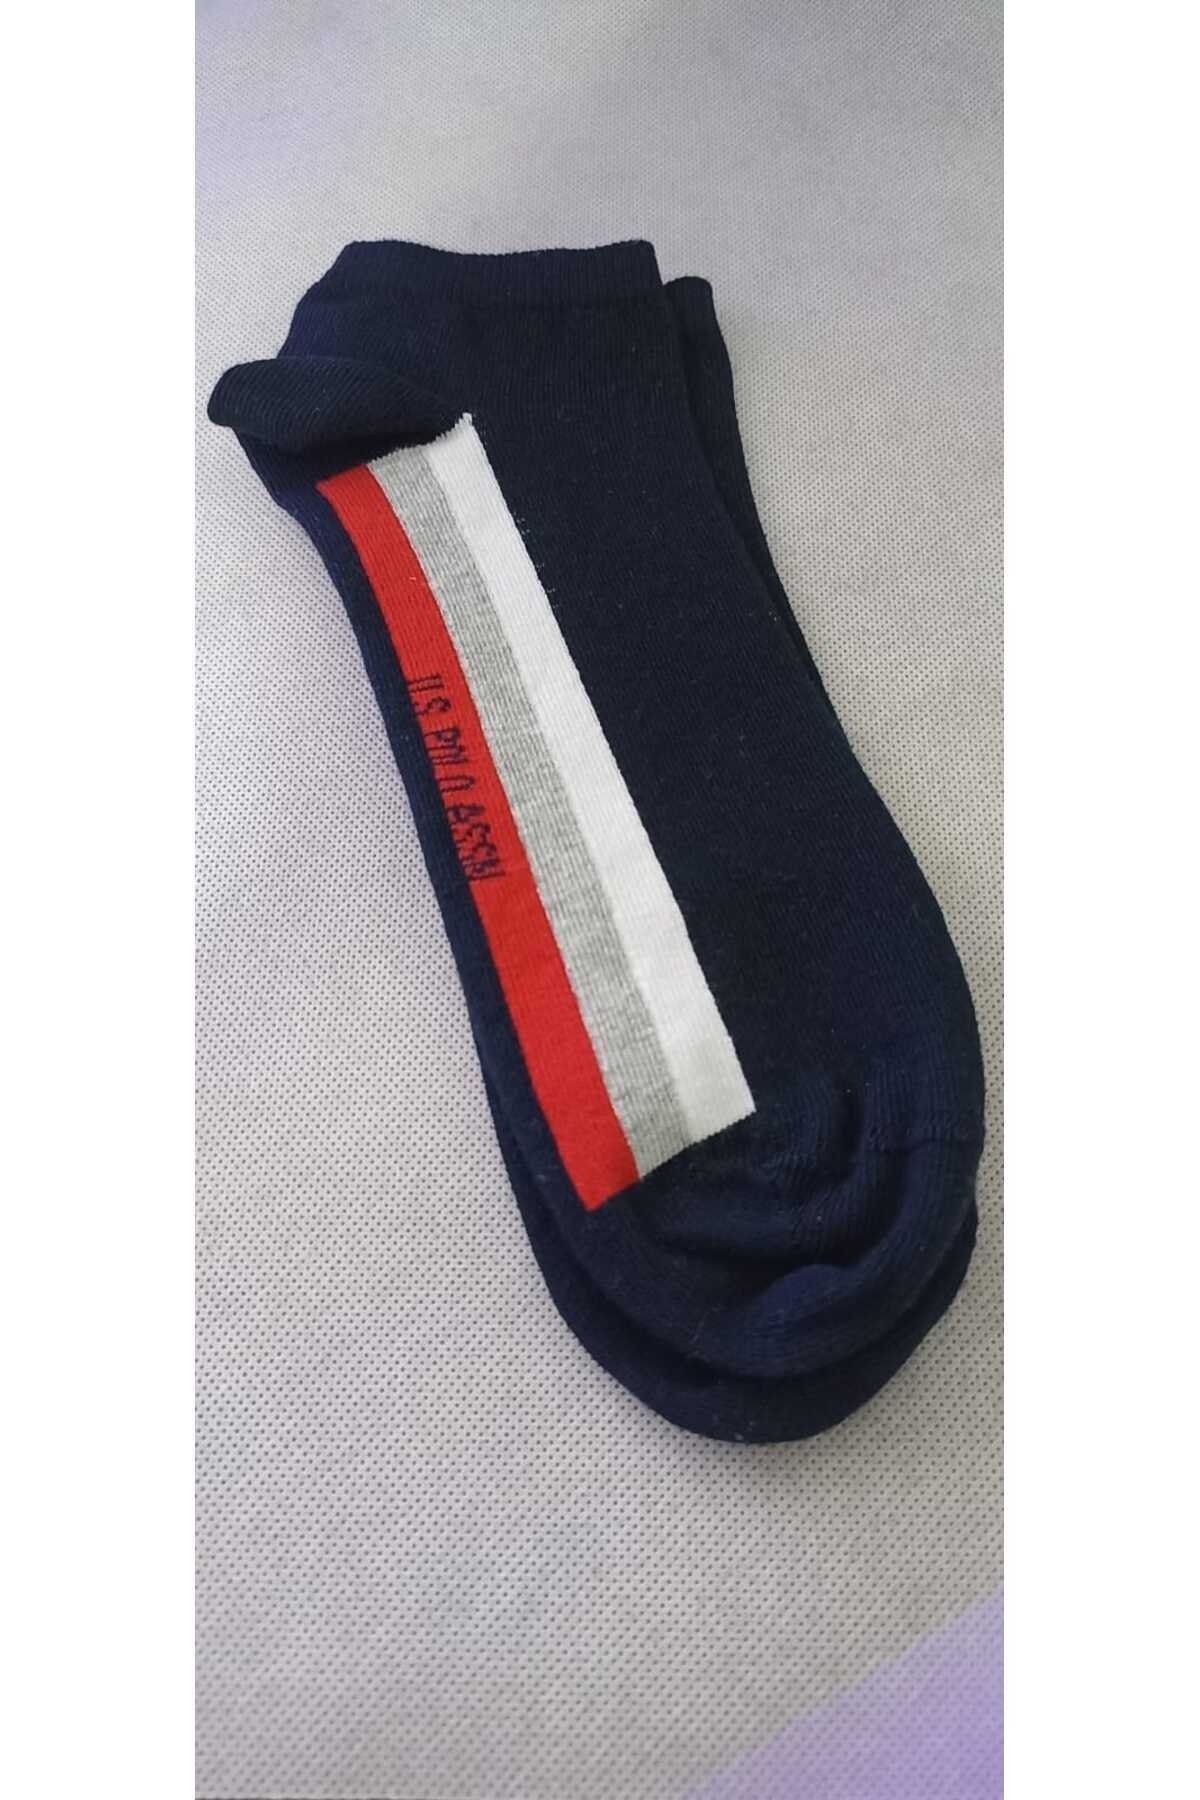 U.S. Polo Assn. Erkek 2'Lİ Lacivert kırmızı gri beyaz Patik Çorap